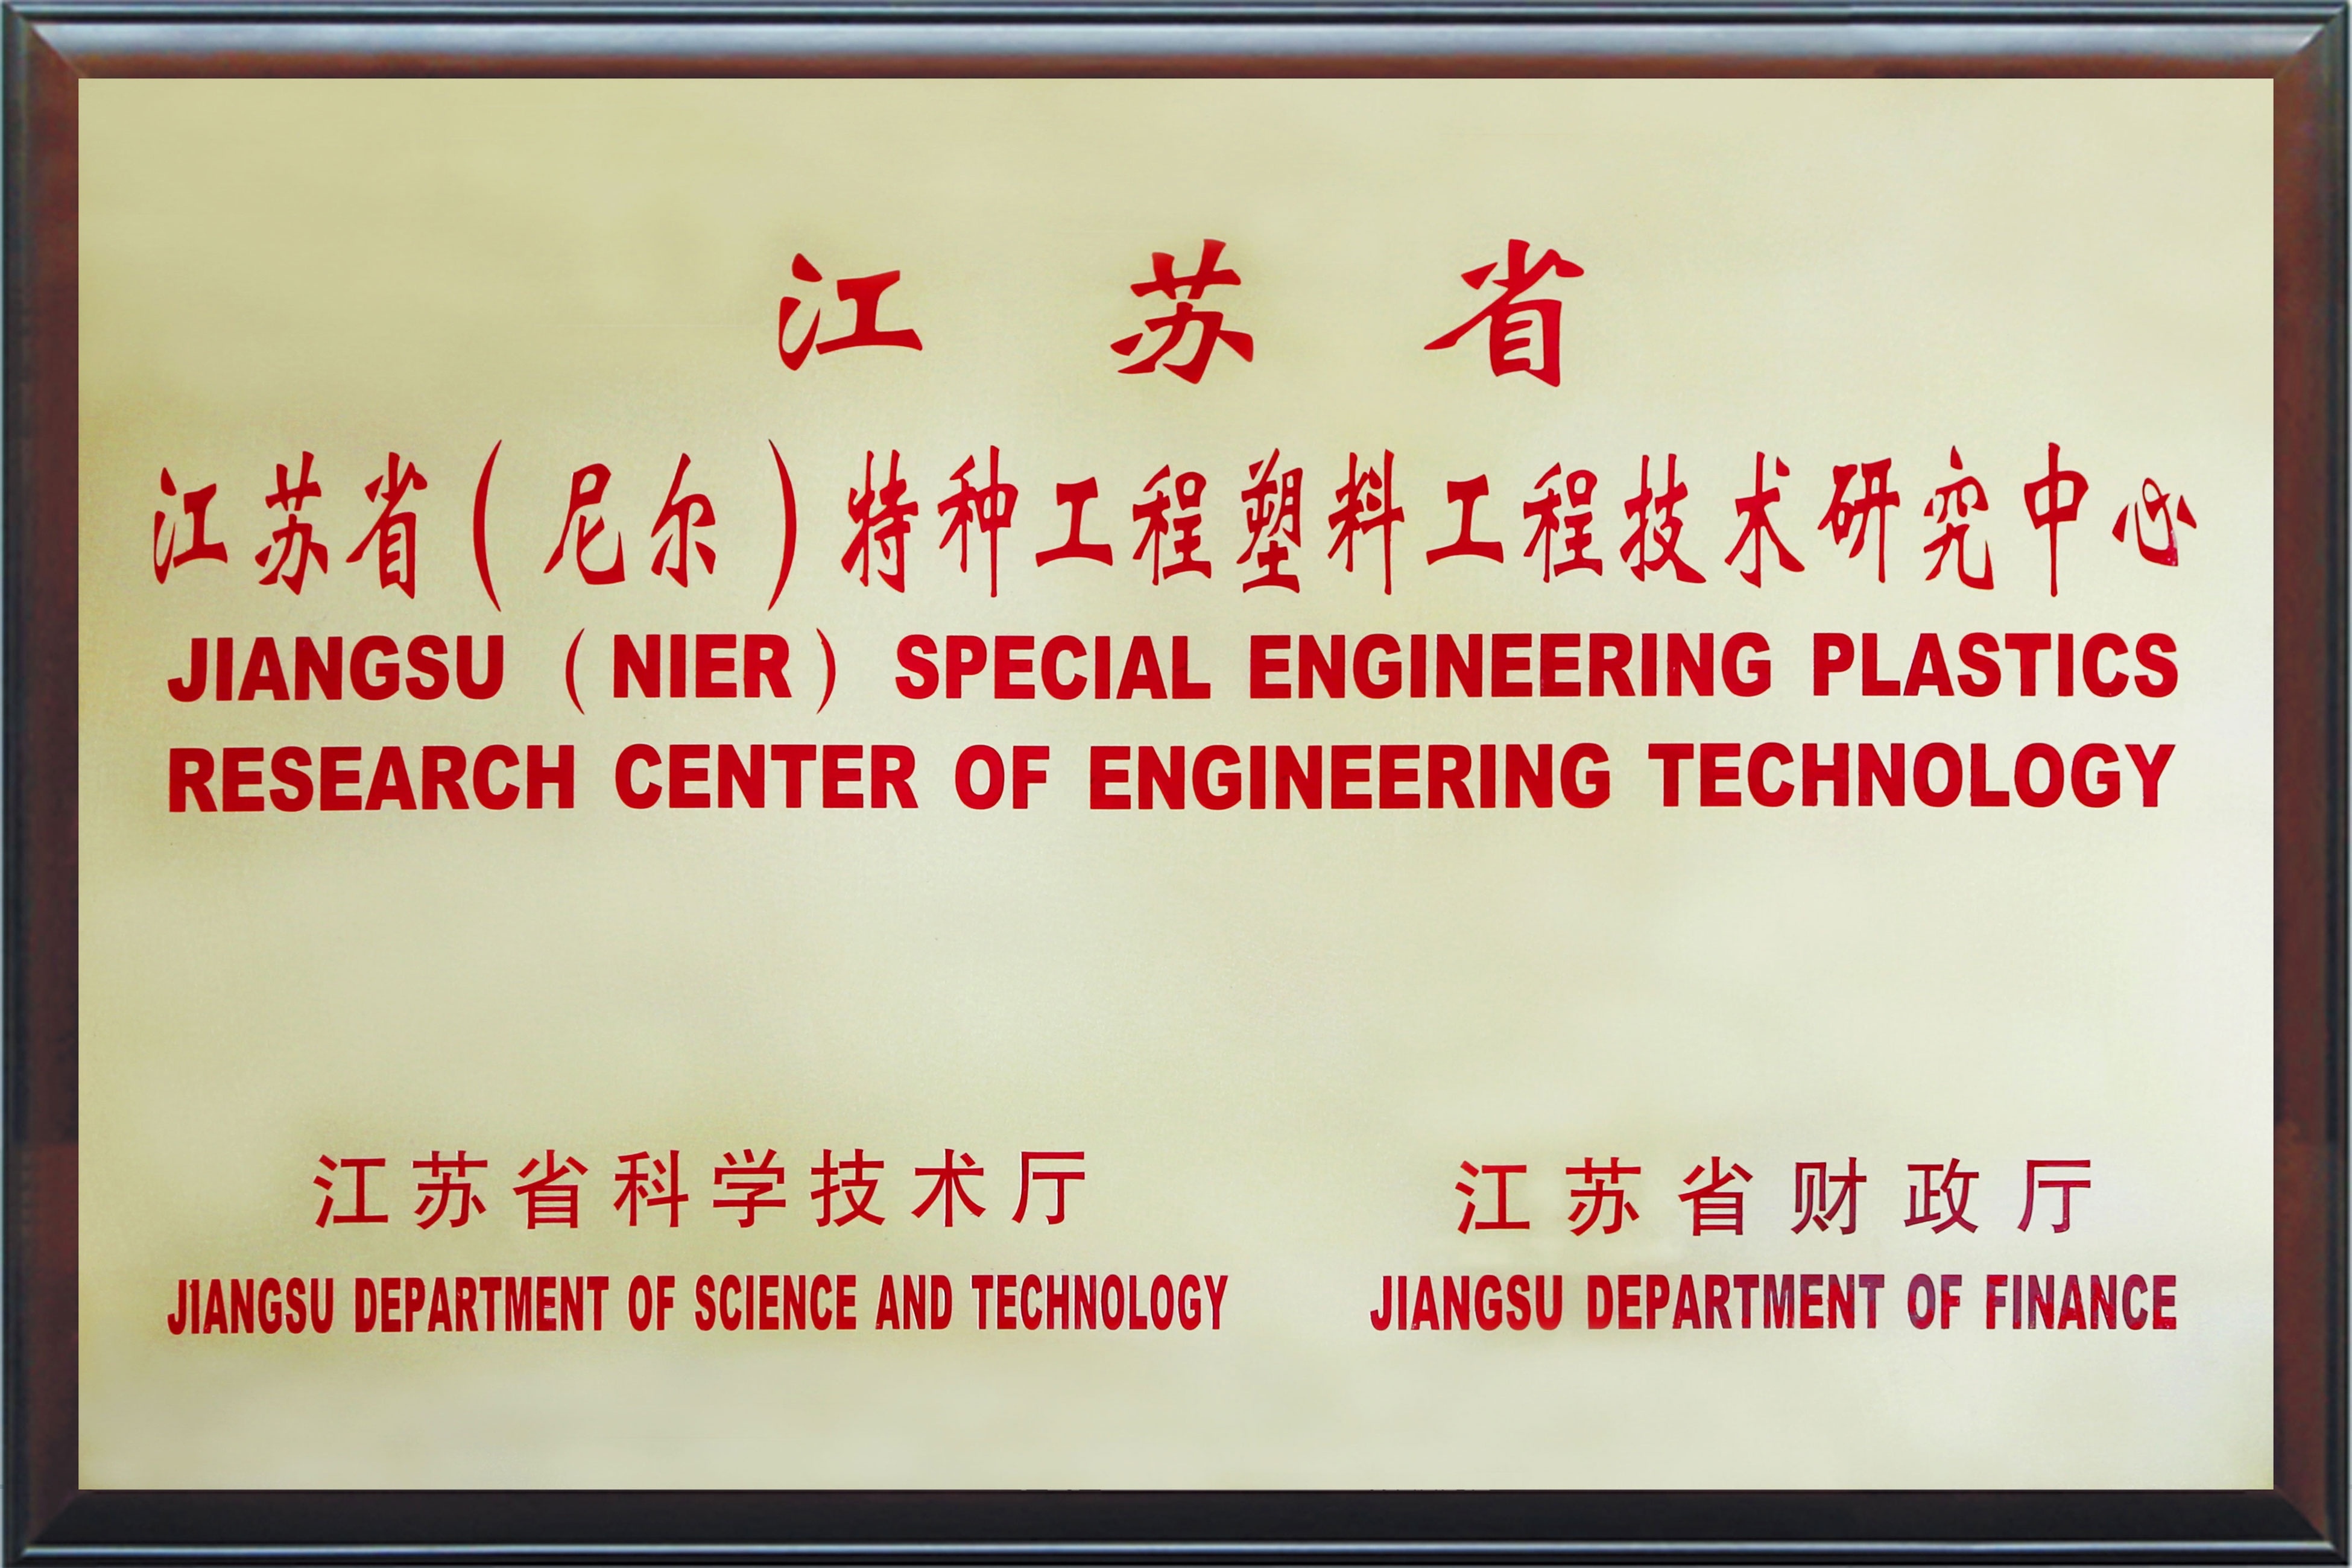 江苏省（尼尔）特种工程塑料工程技术研究中心